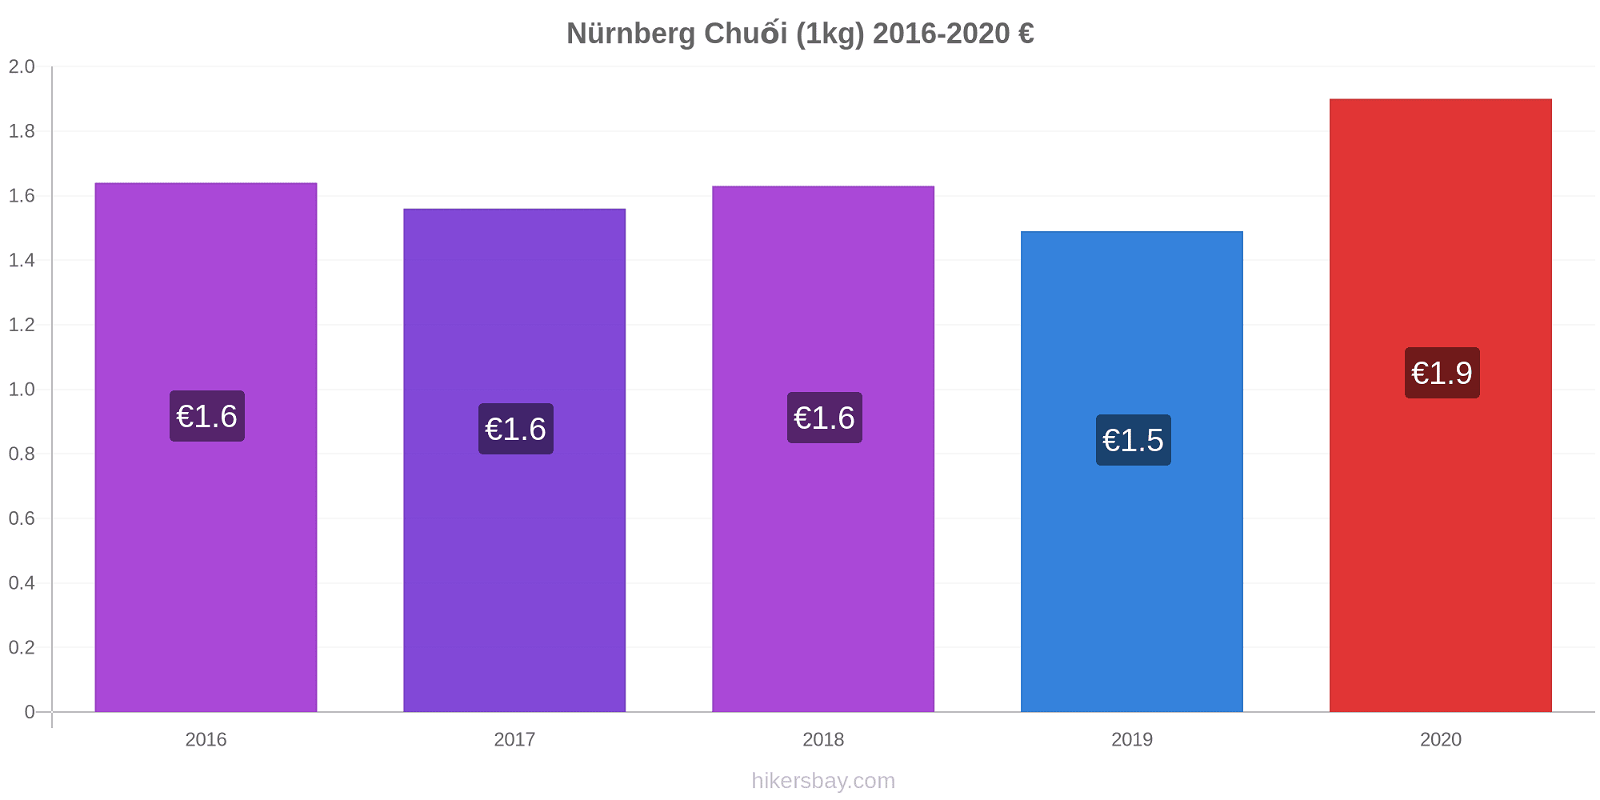 Nürnberg thay đổi giá Chuối (1kg) hikersbay.com